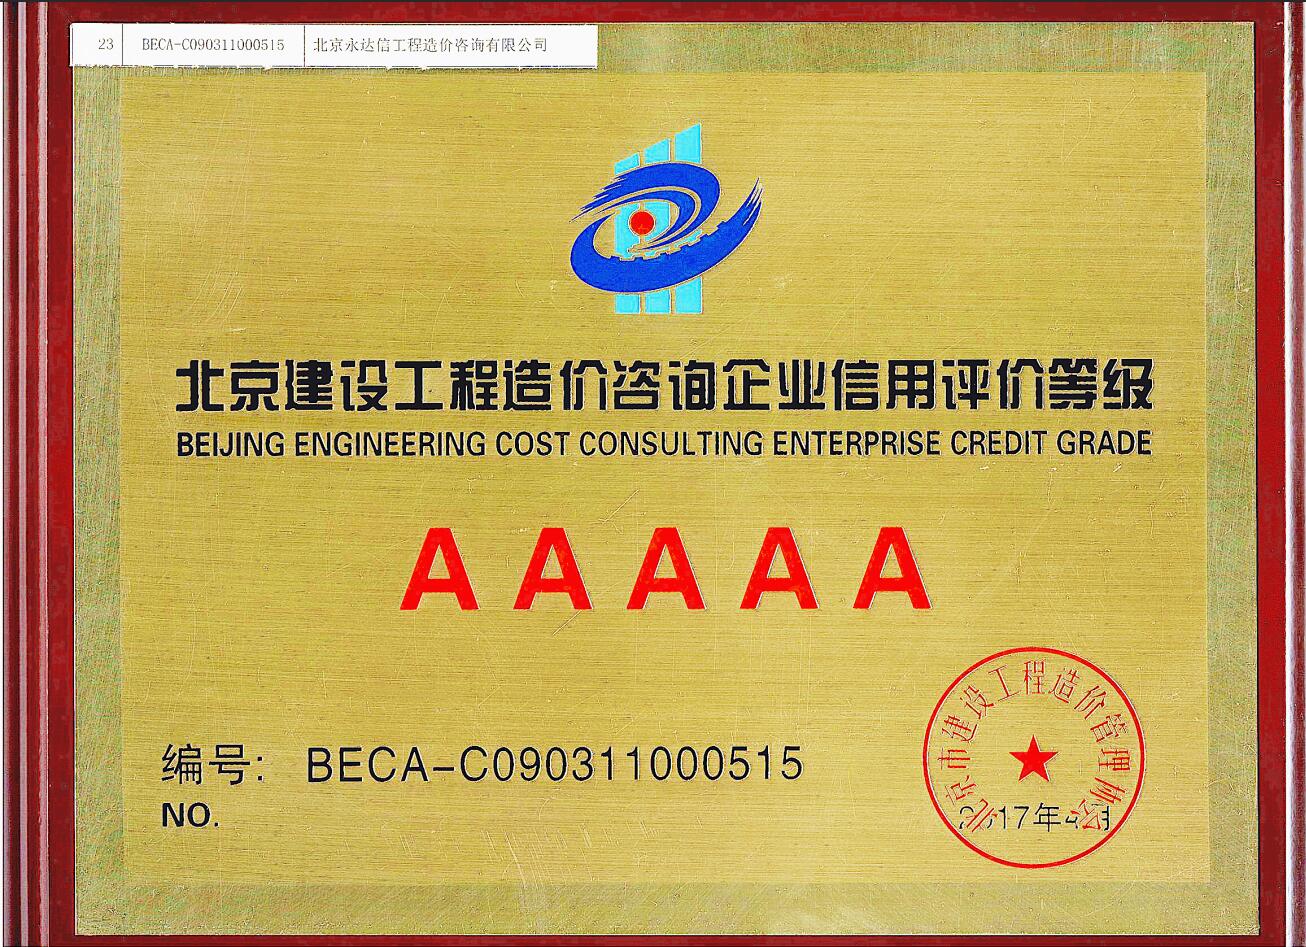 北京市建设工程造价管理协会首批信用评定5A级企业